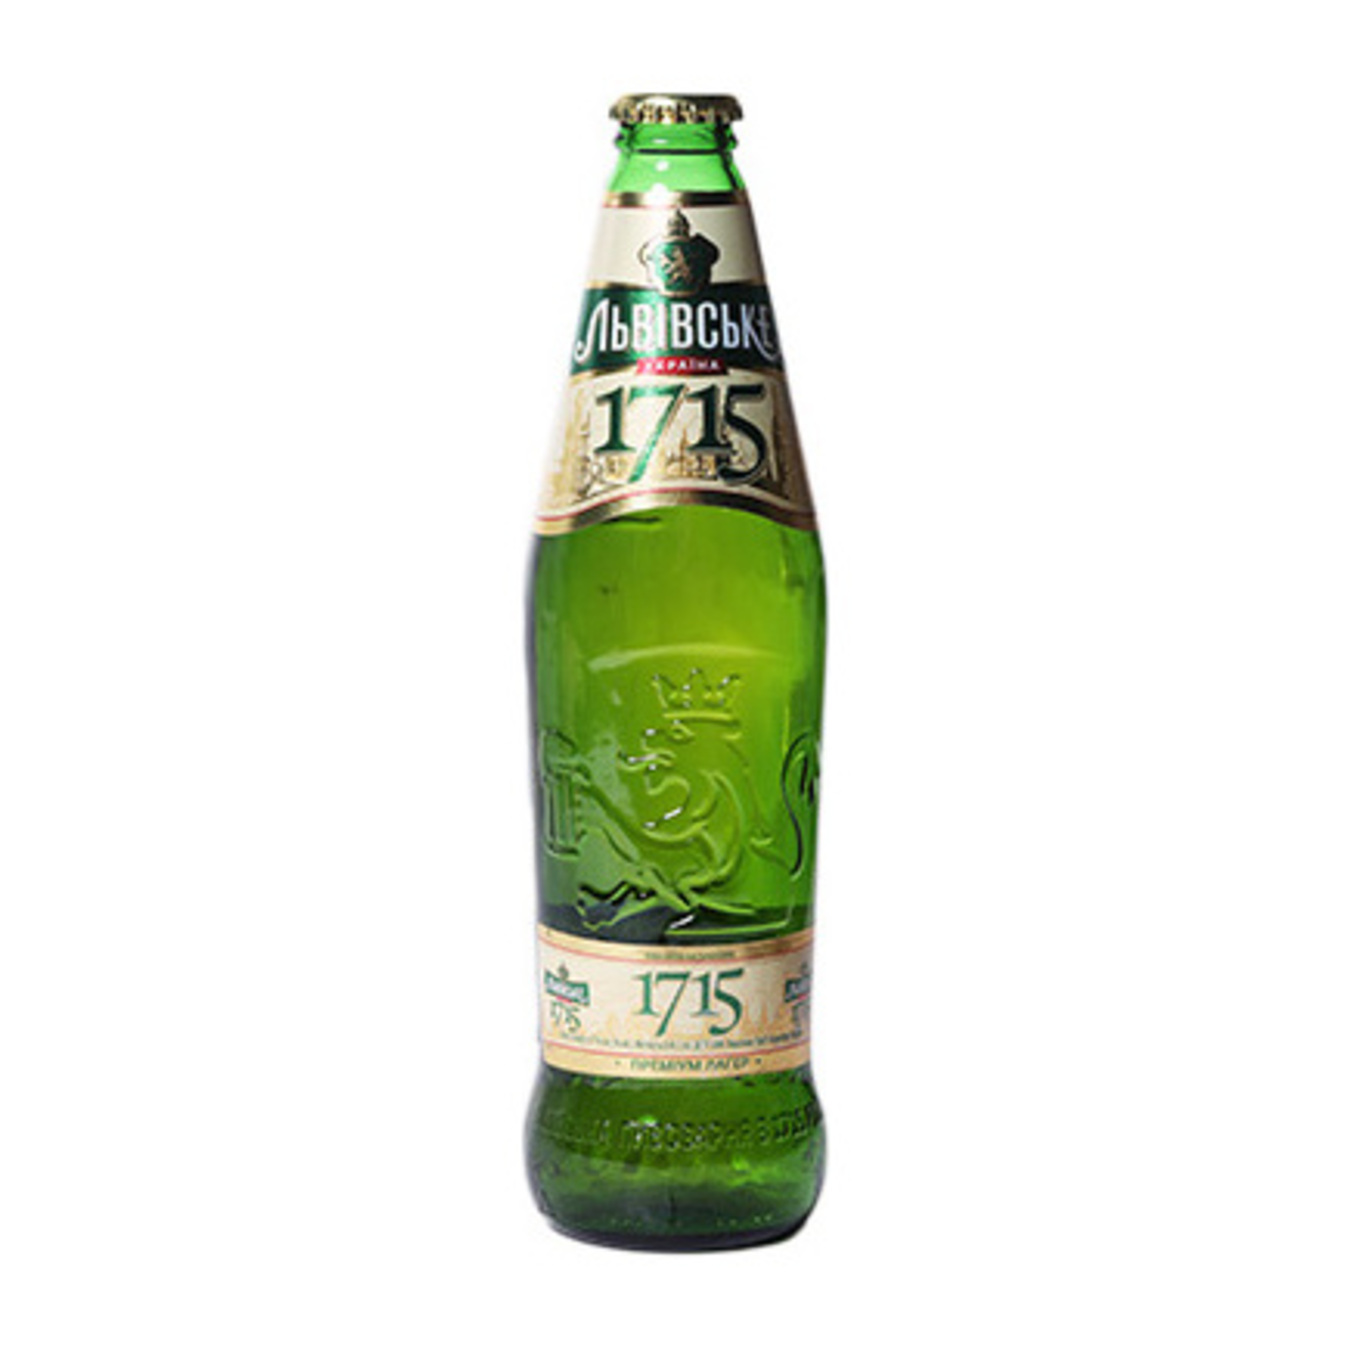 Пиво Львівське 1715 світле пастеризоване 4,7% 0,45л